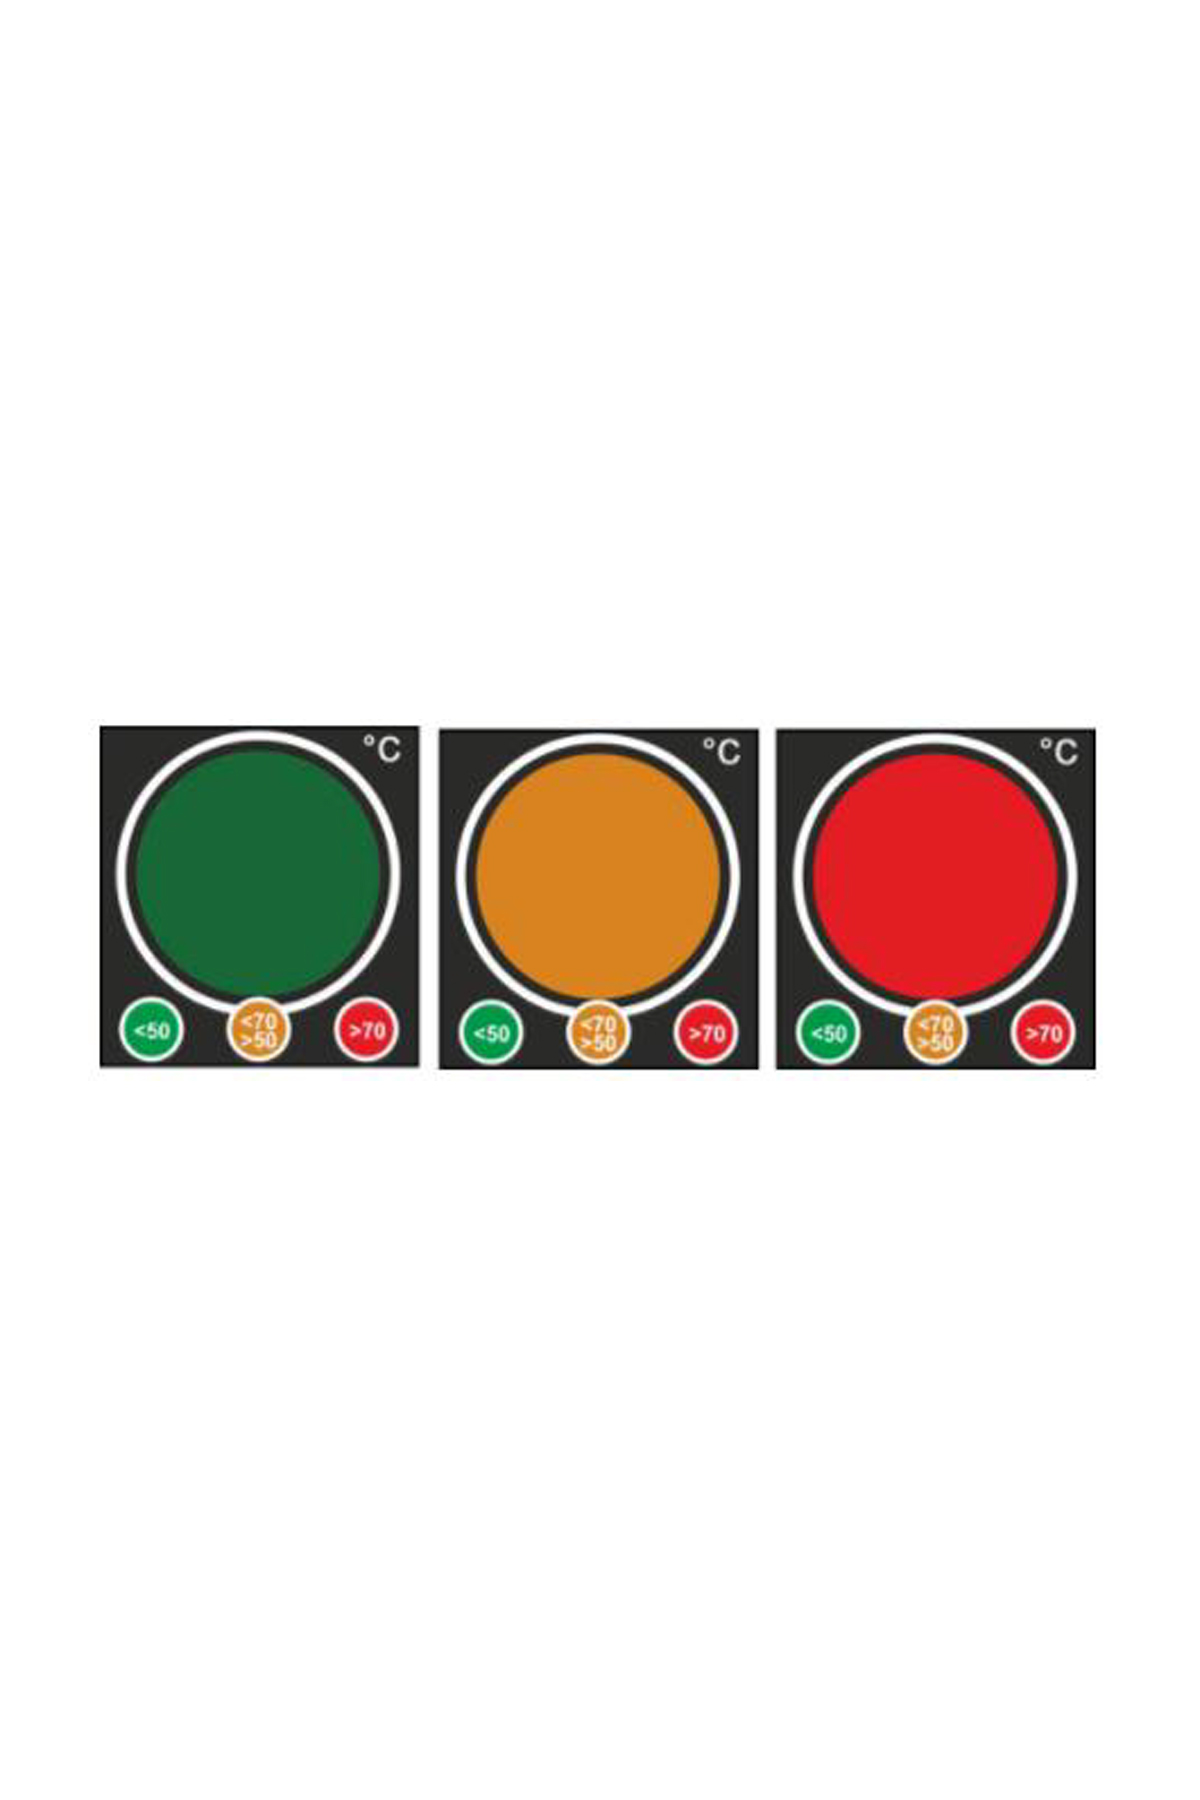 Geri Dönüşümlü Traffic Light Sıcaklık Etiketi